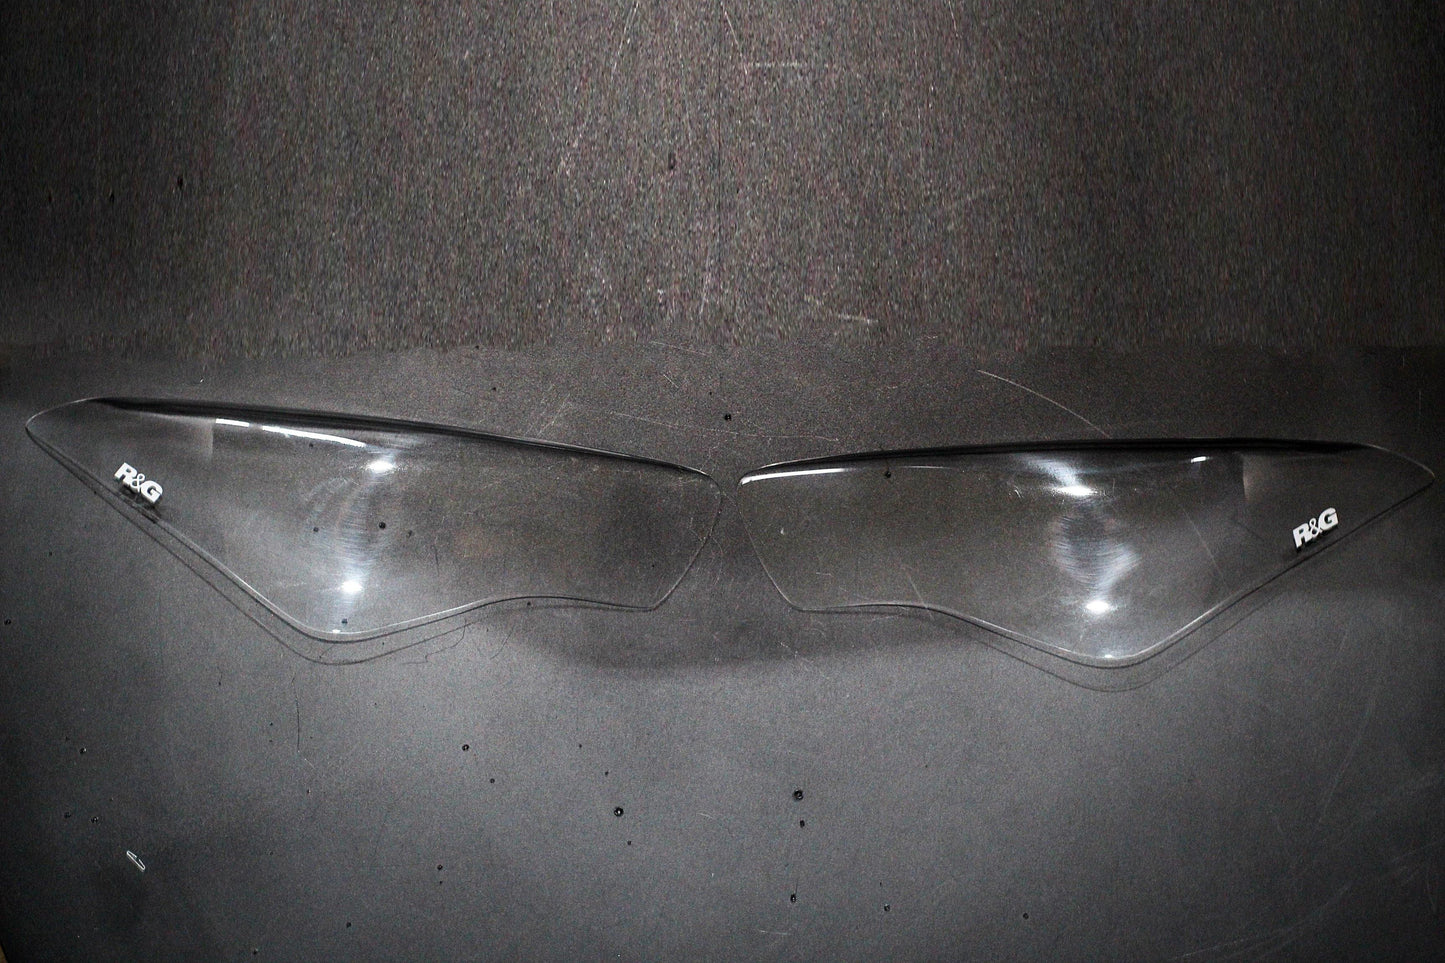 R&G Headlight Shields fits for Kawasaki ZX-6R ('19-) & Ninja 400 / 250 ('18-) - Durian Bikers